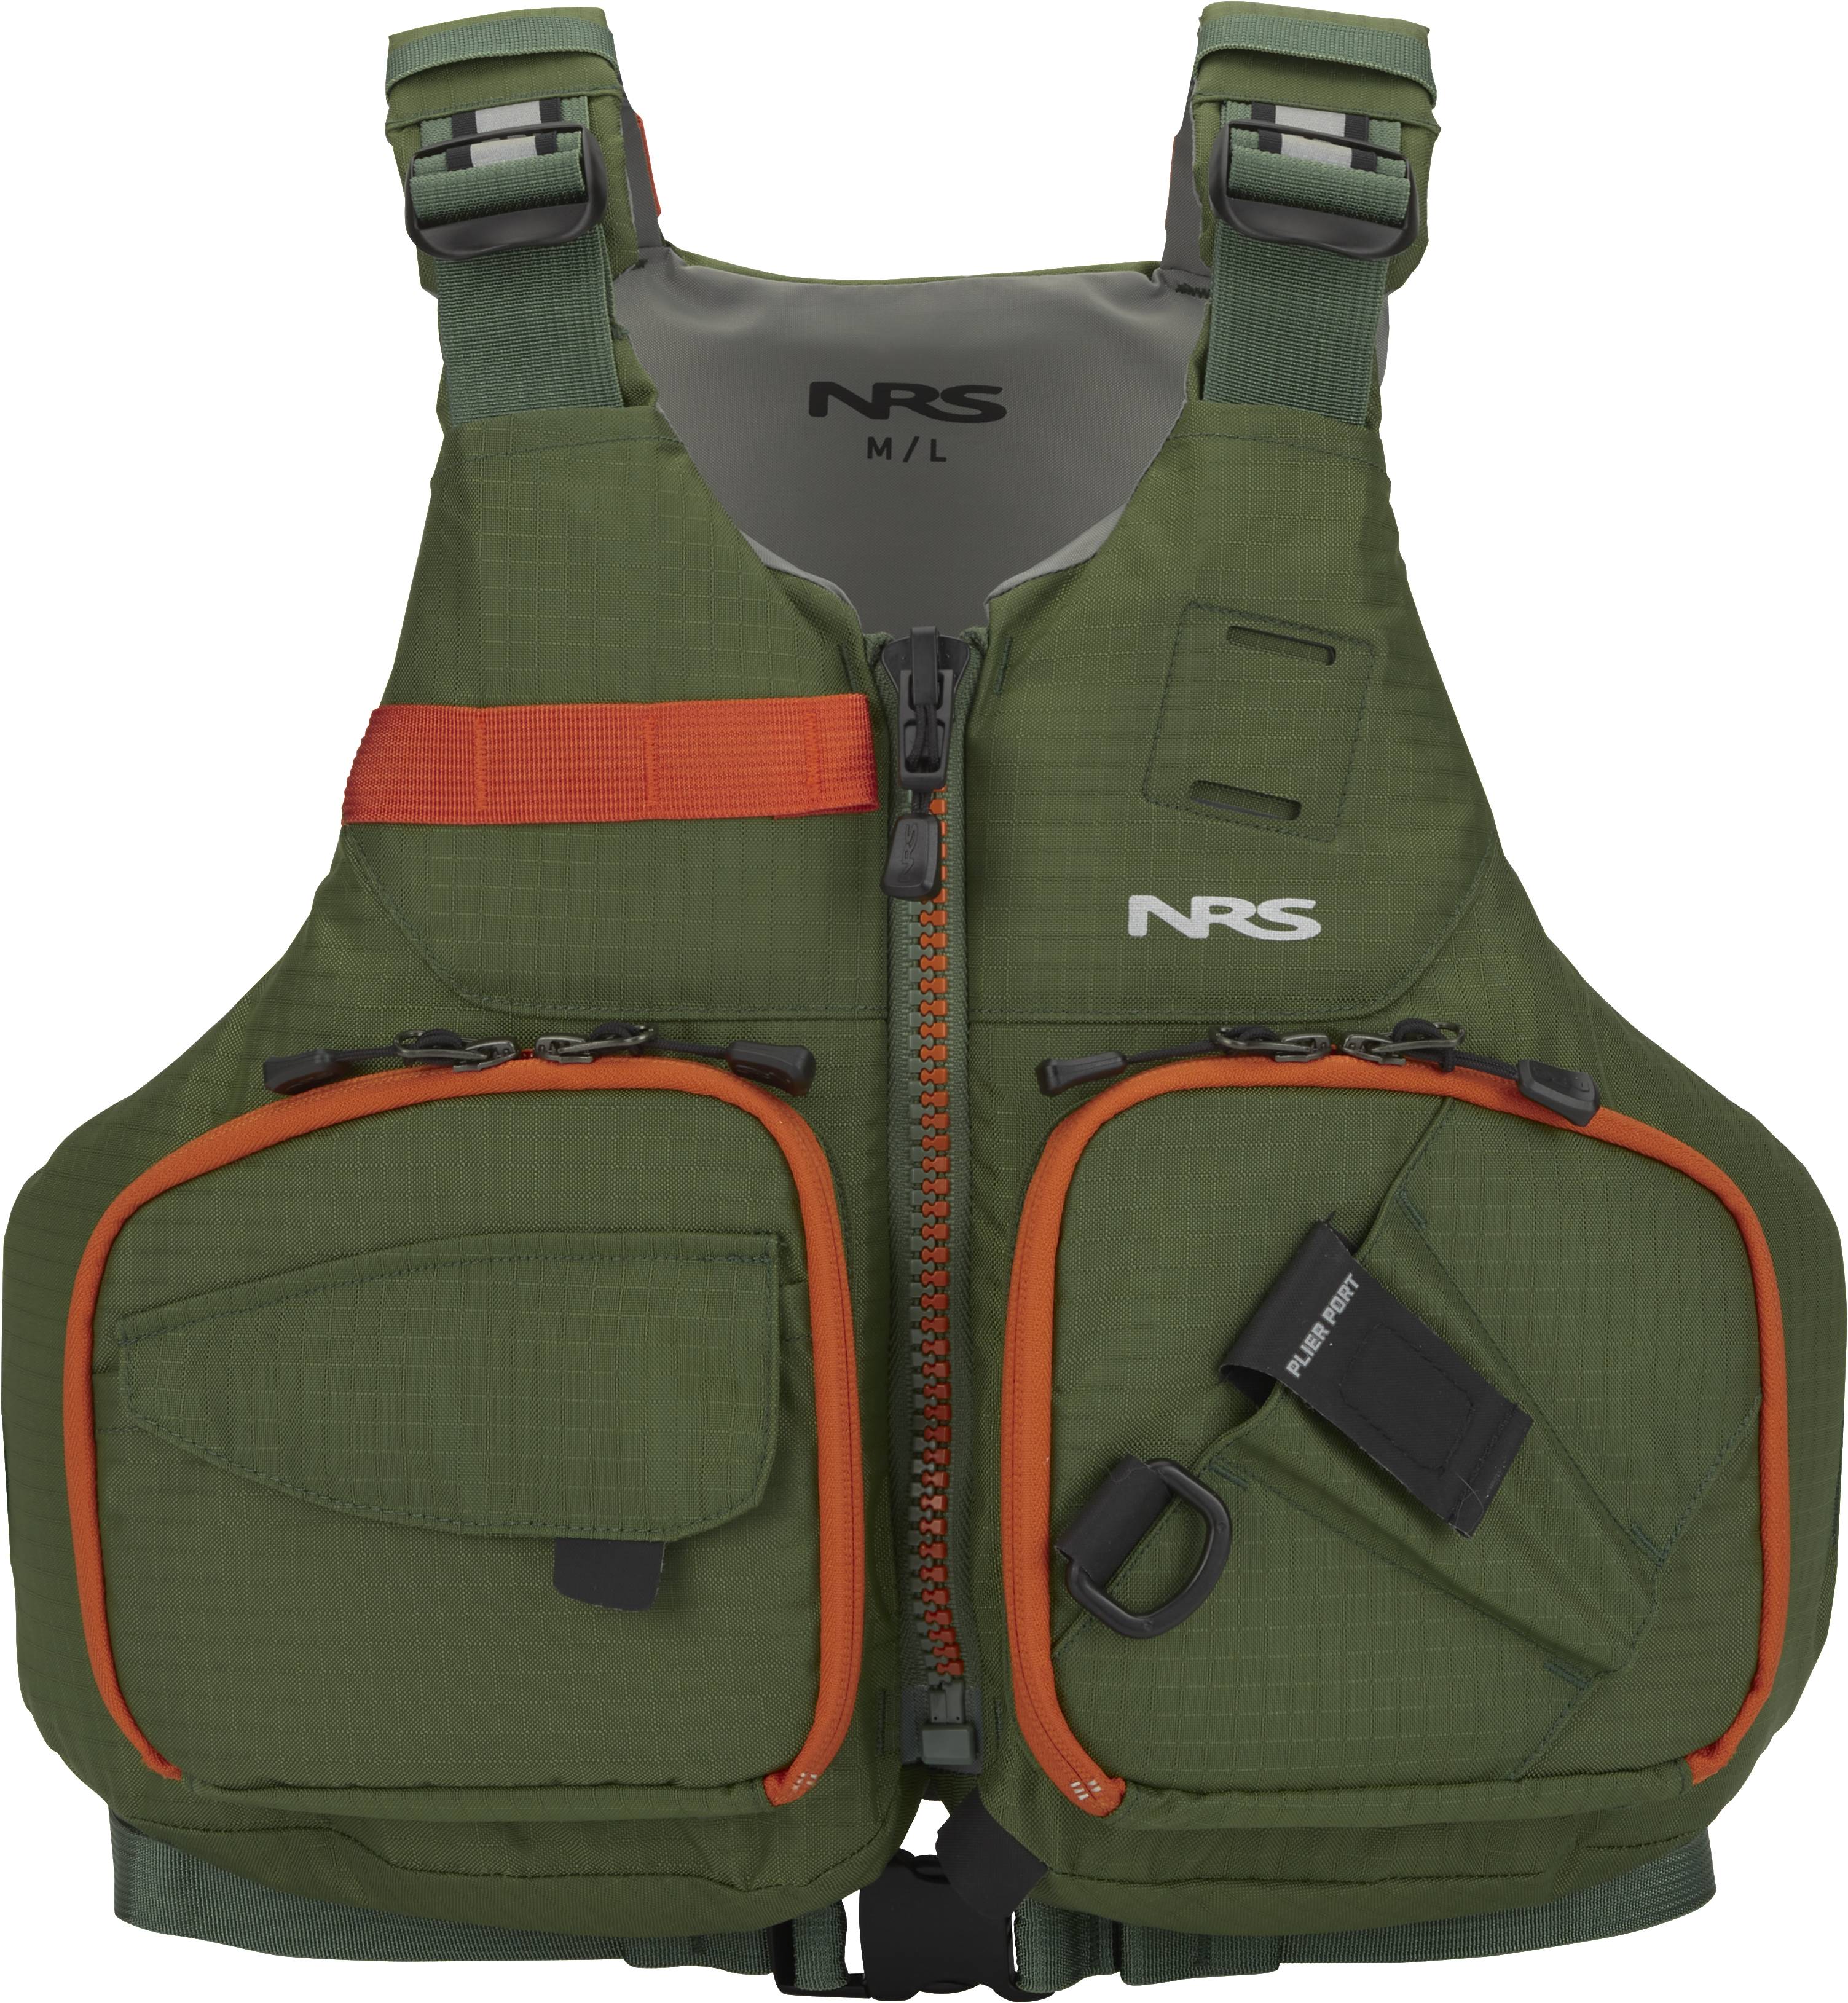 Fishing PFDs - Kayak, Inflatable, Vests & More [Kayak Angler Buyer's Guide]